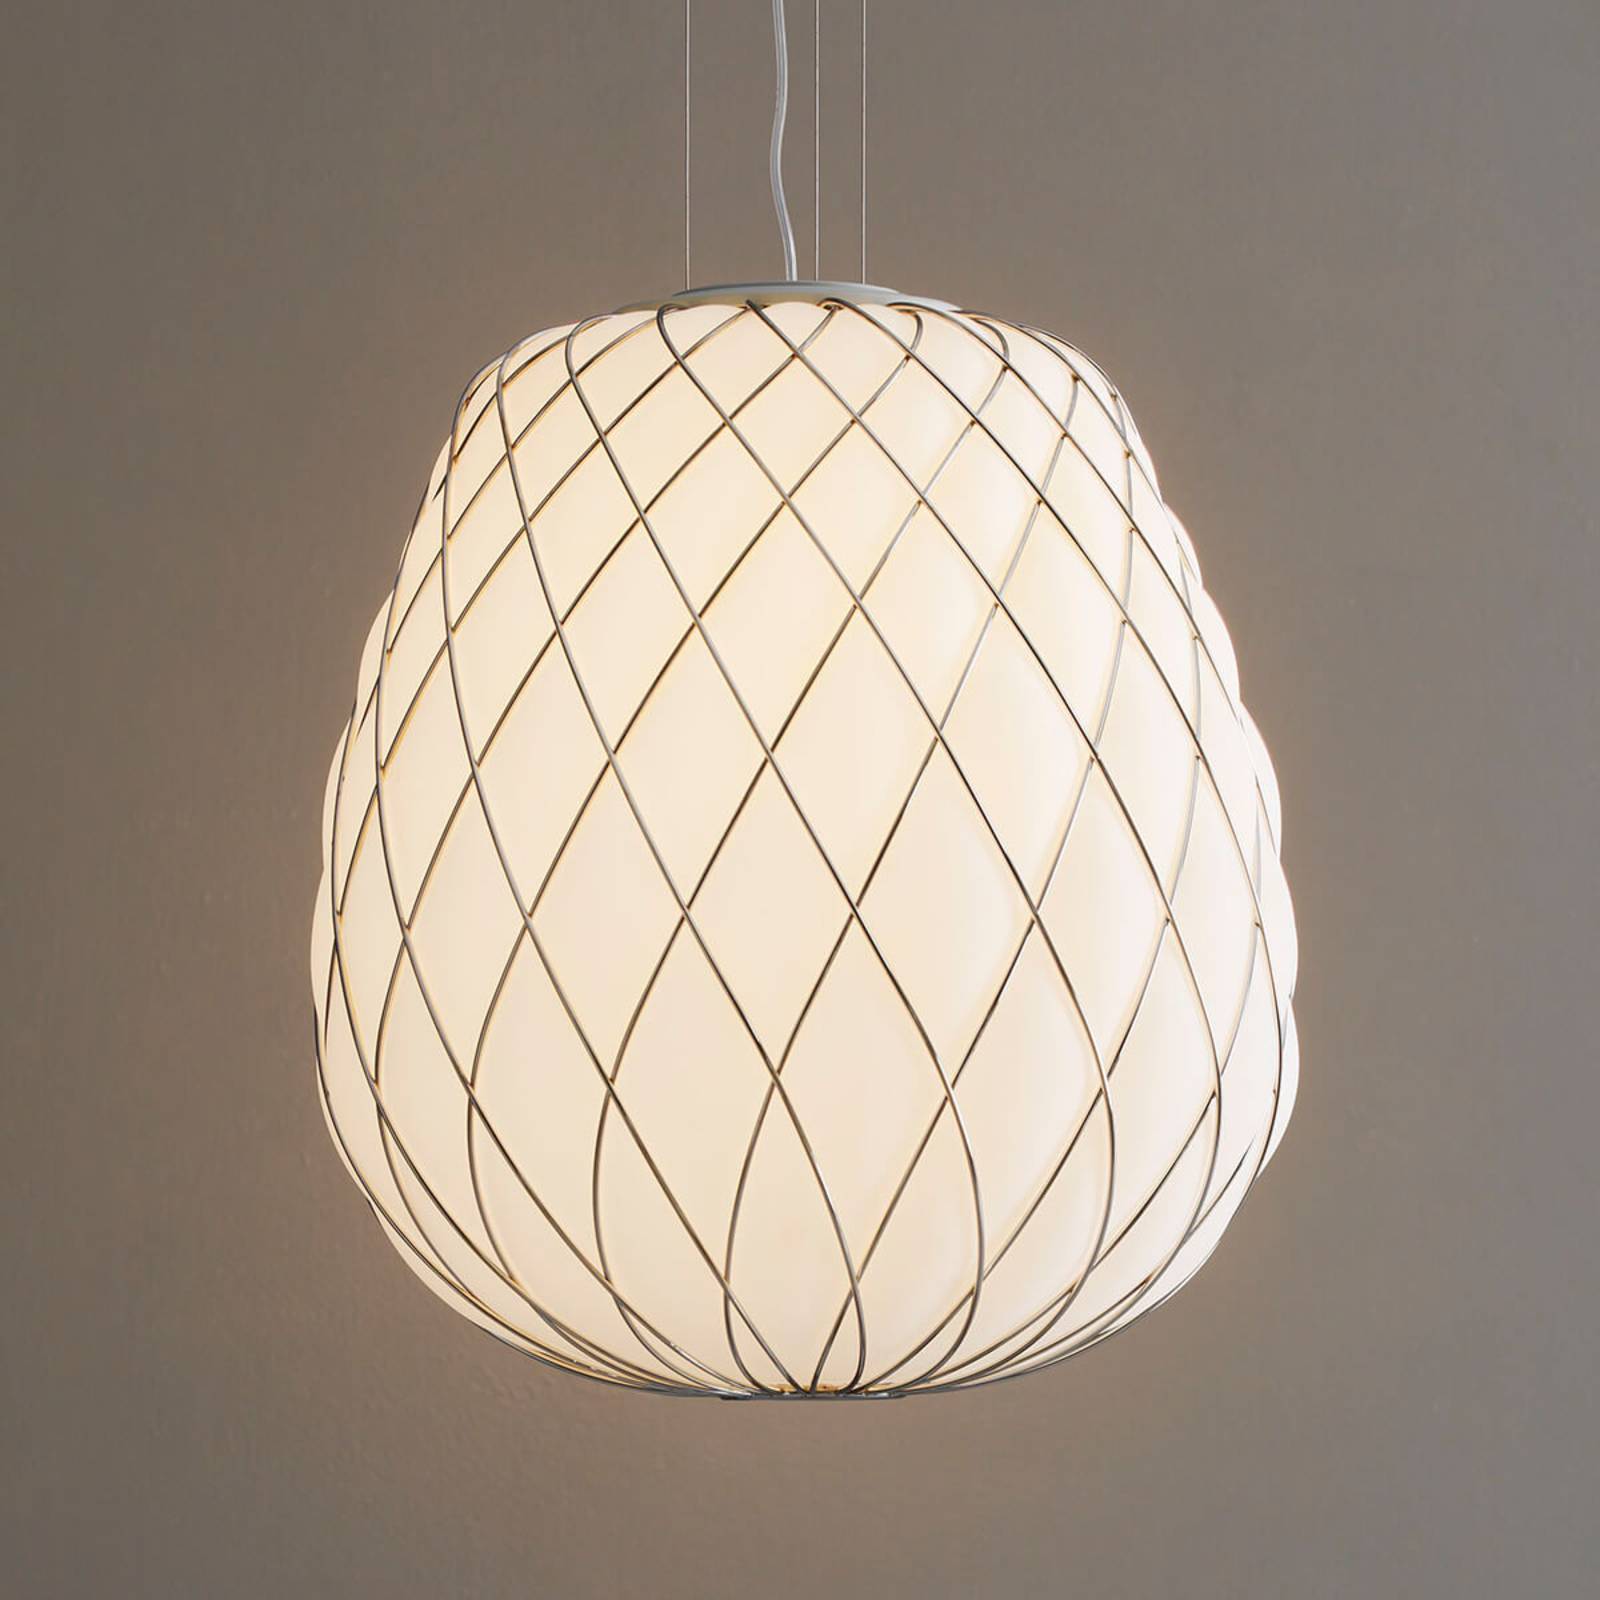 pols Vooravond aflevering Pinecone - design hanglamp van melkglas | Lampen24.nl